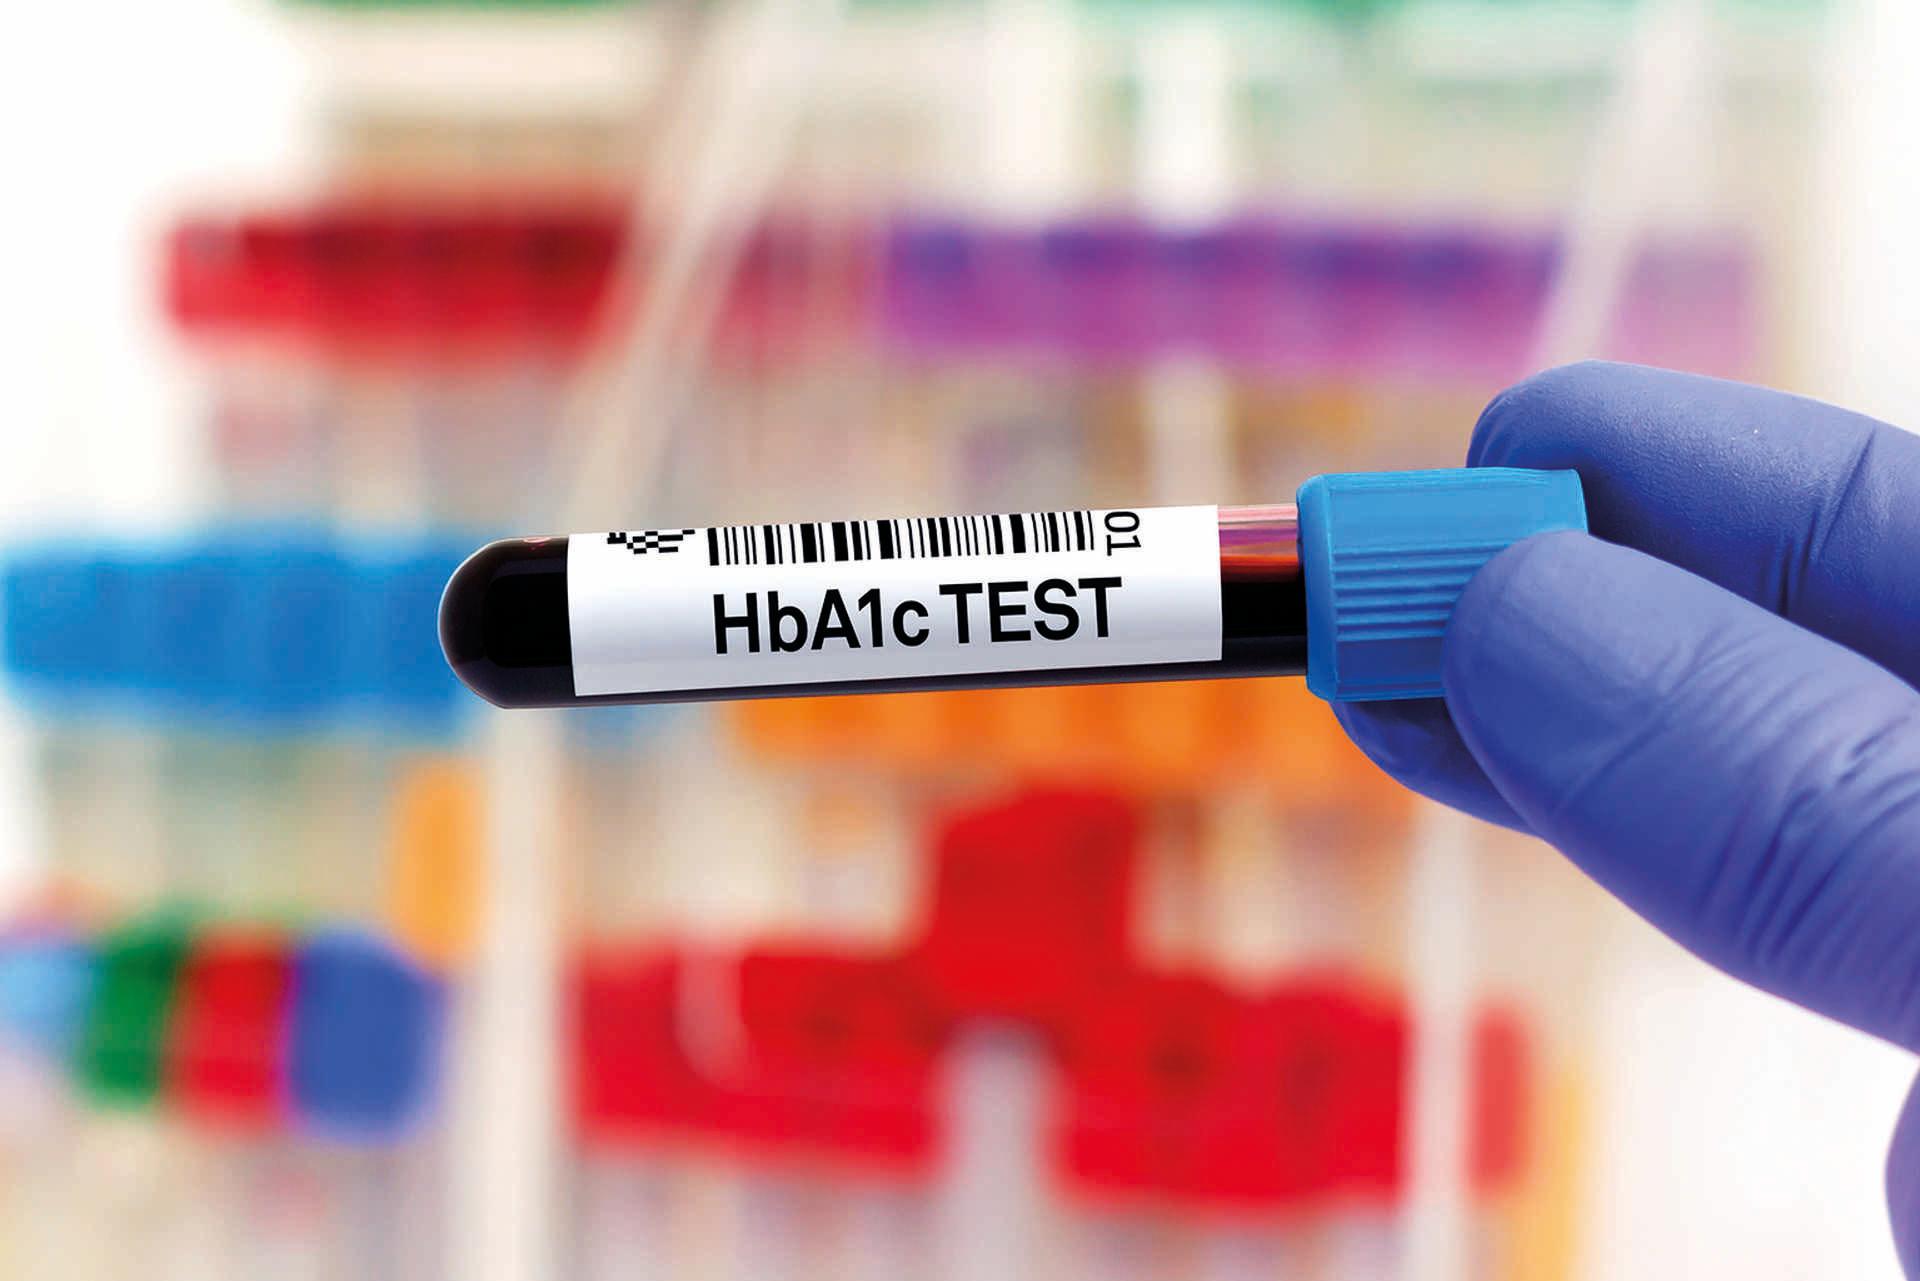 Blutprobe zur Untersuchung von HbA1c oder Hämoglobin A1c zum Nachweis von Diabetes